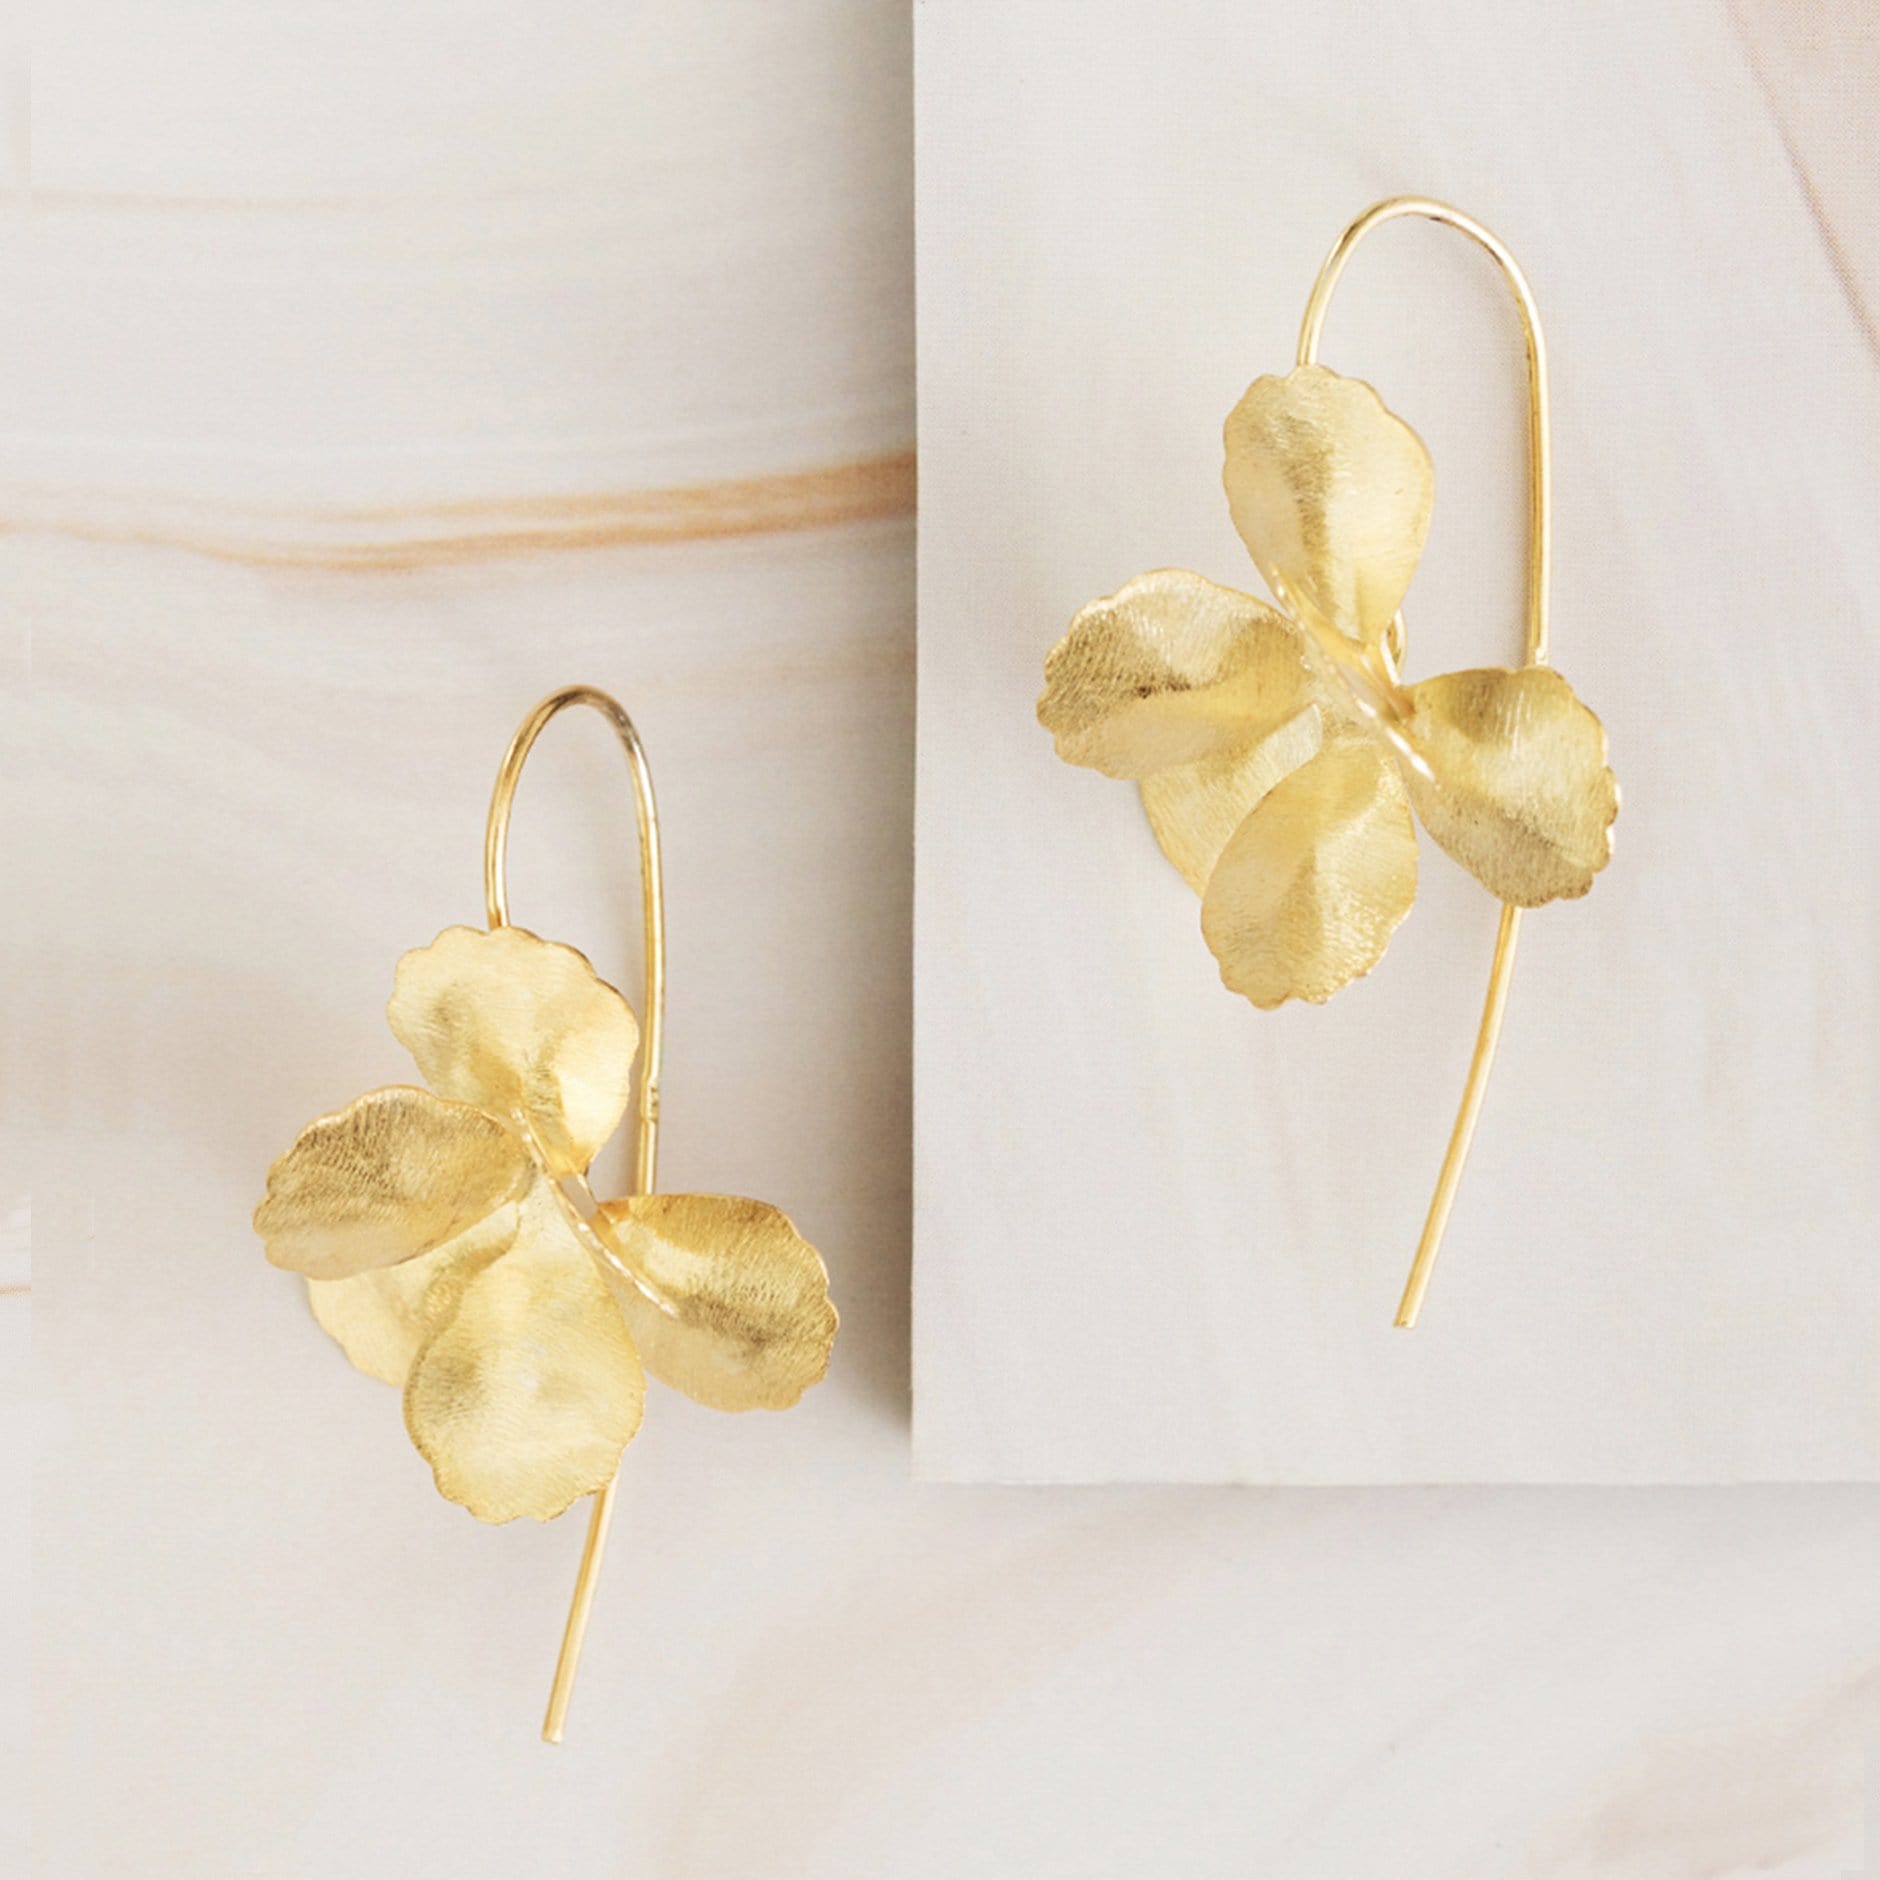 Emblem Jewelry Earrings Spring Hydrangea Flower Drop Earrings